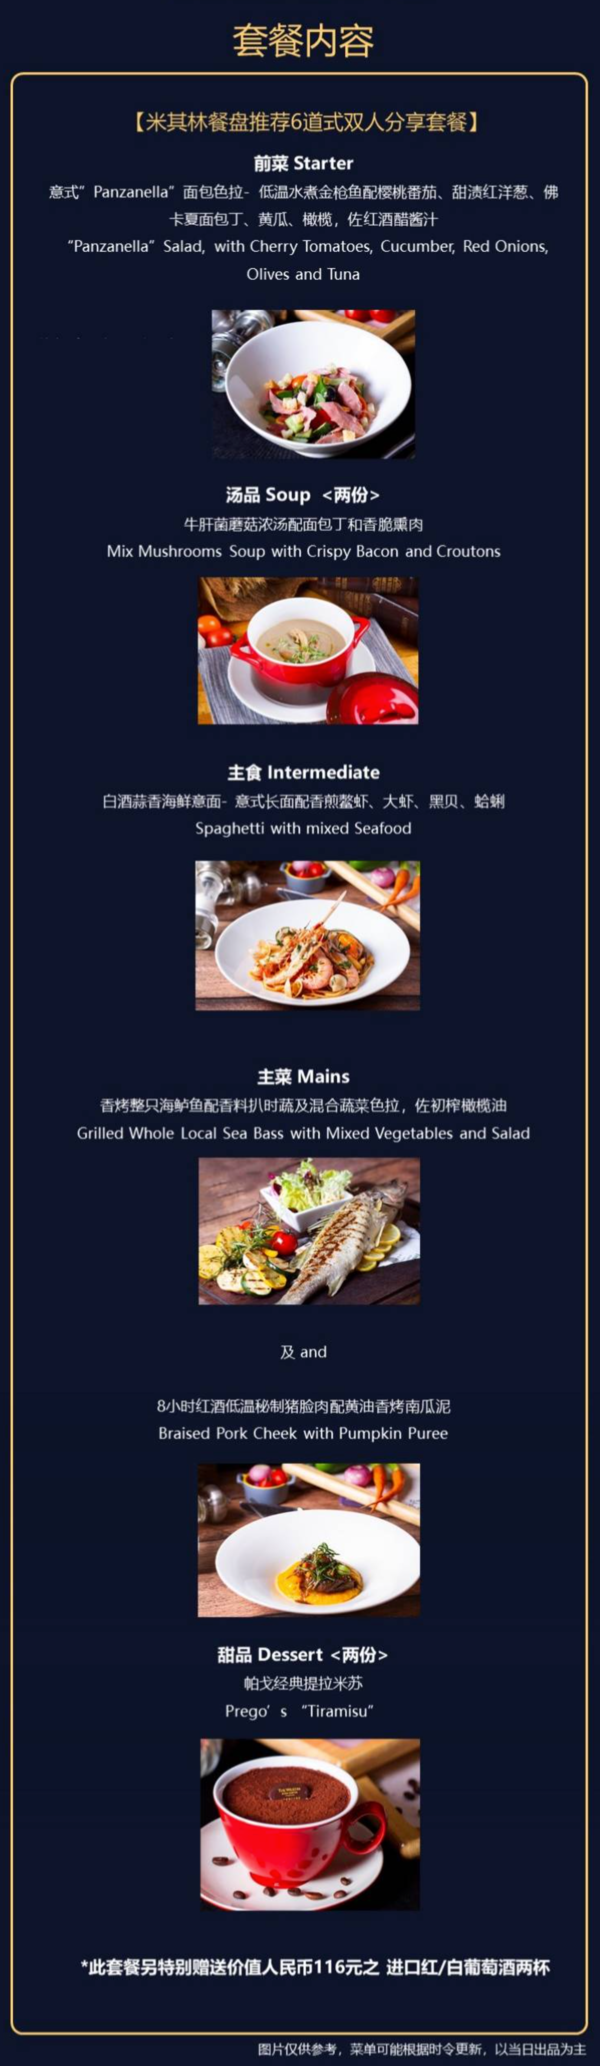 上海威斯汀大饭店  帕戈意大利餐厅 米其林餐盘双人套餐